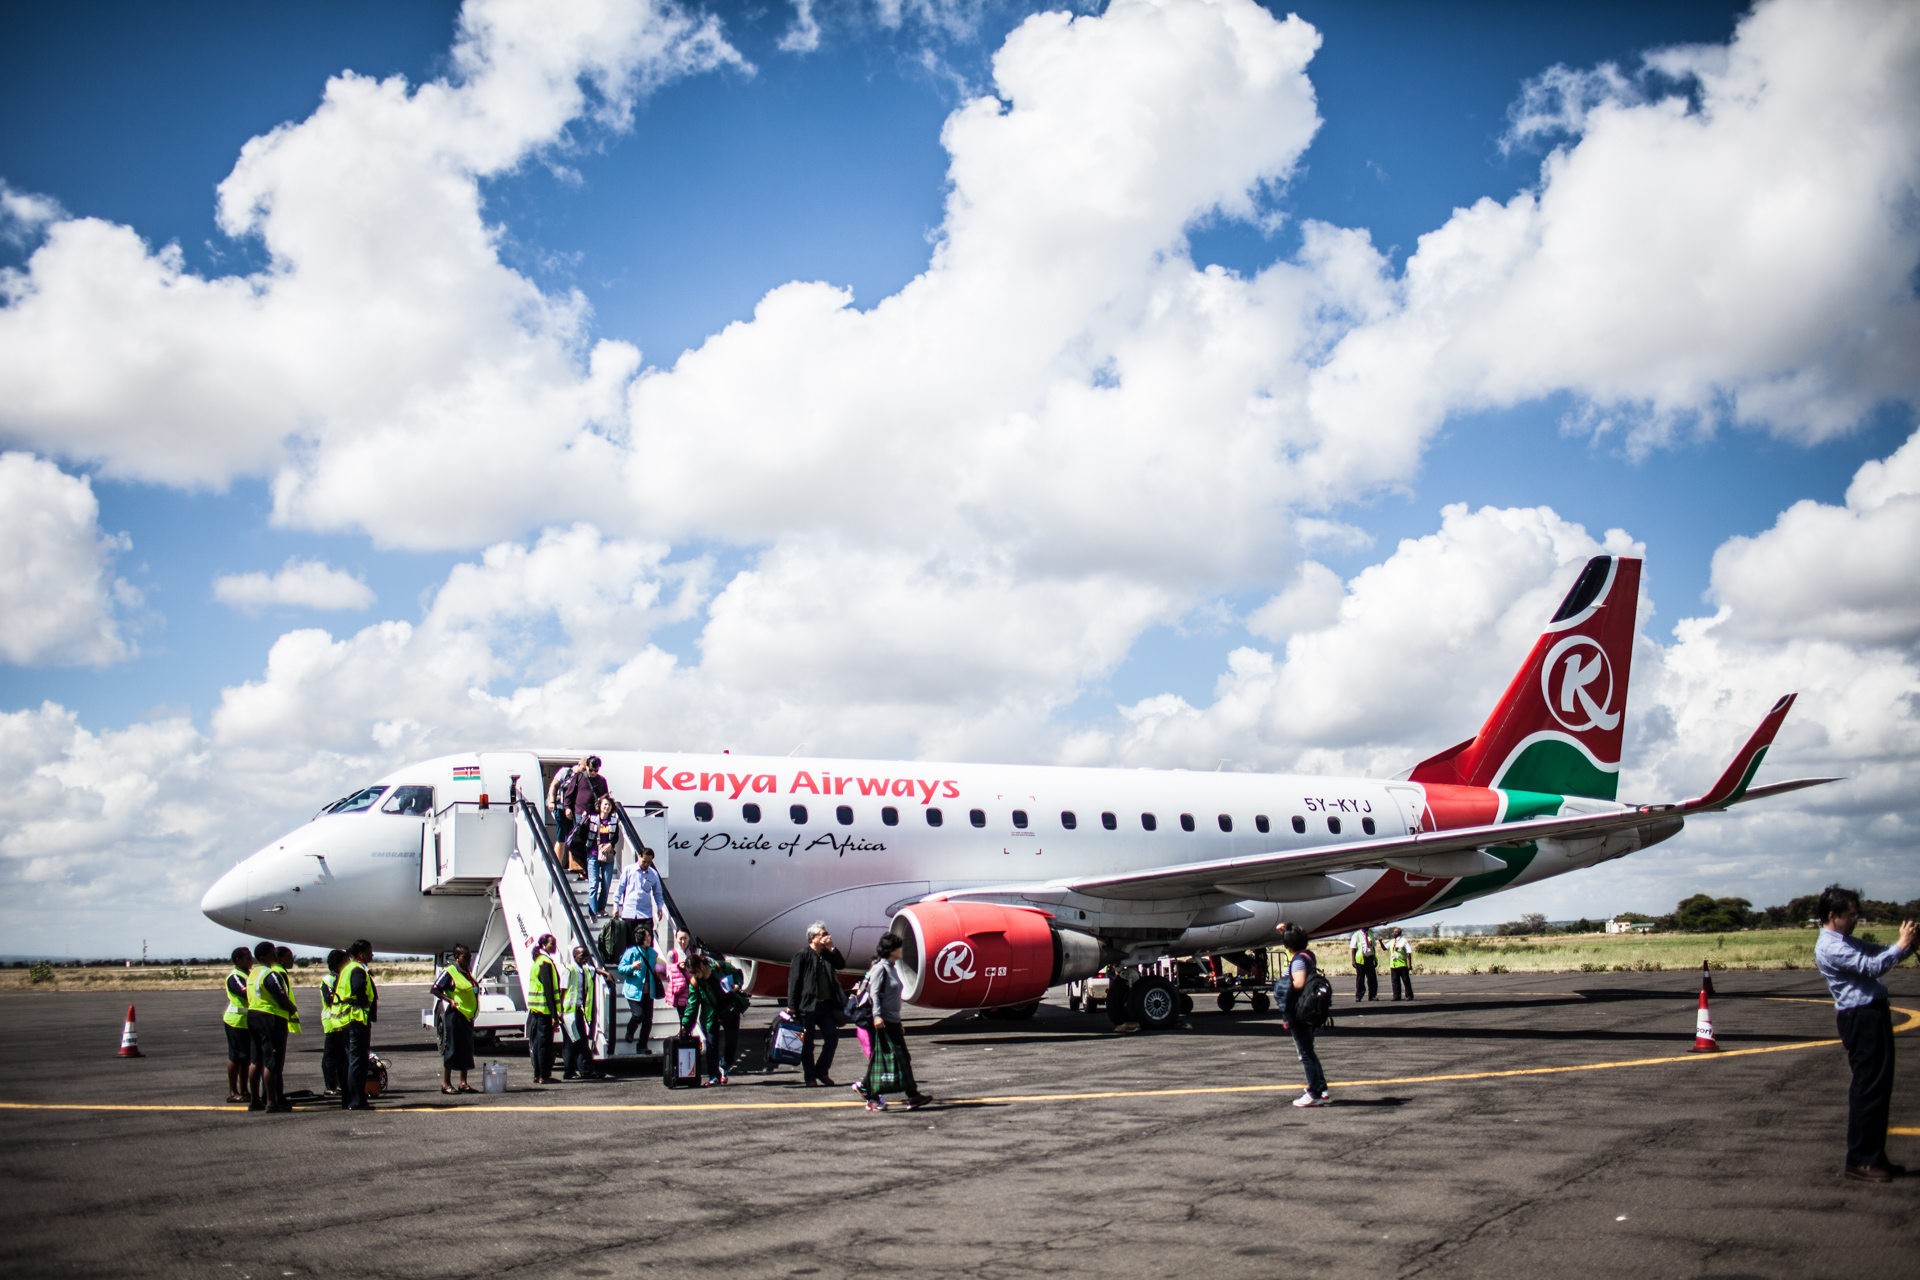 Kenya Airways plane on the runway